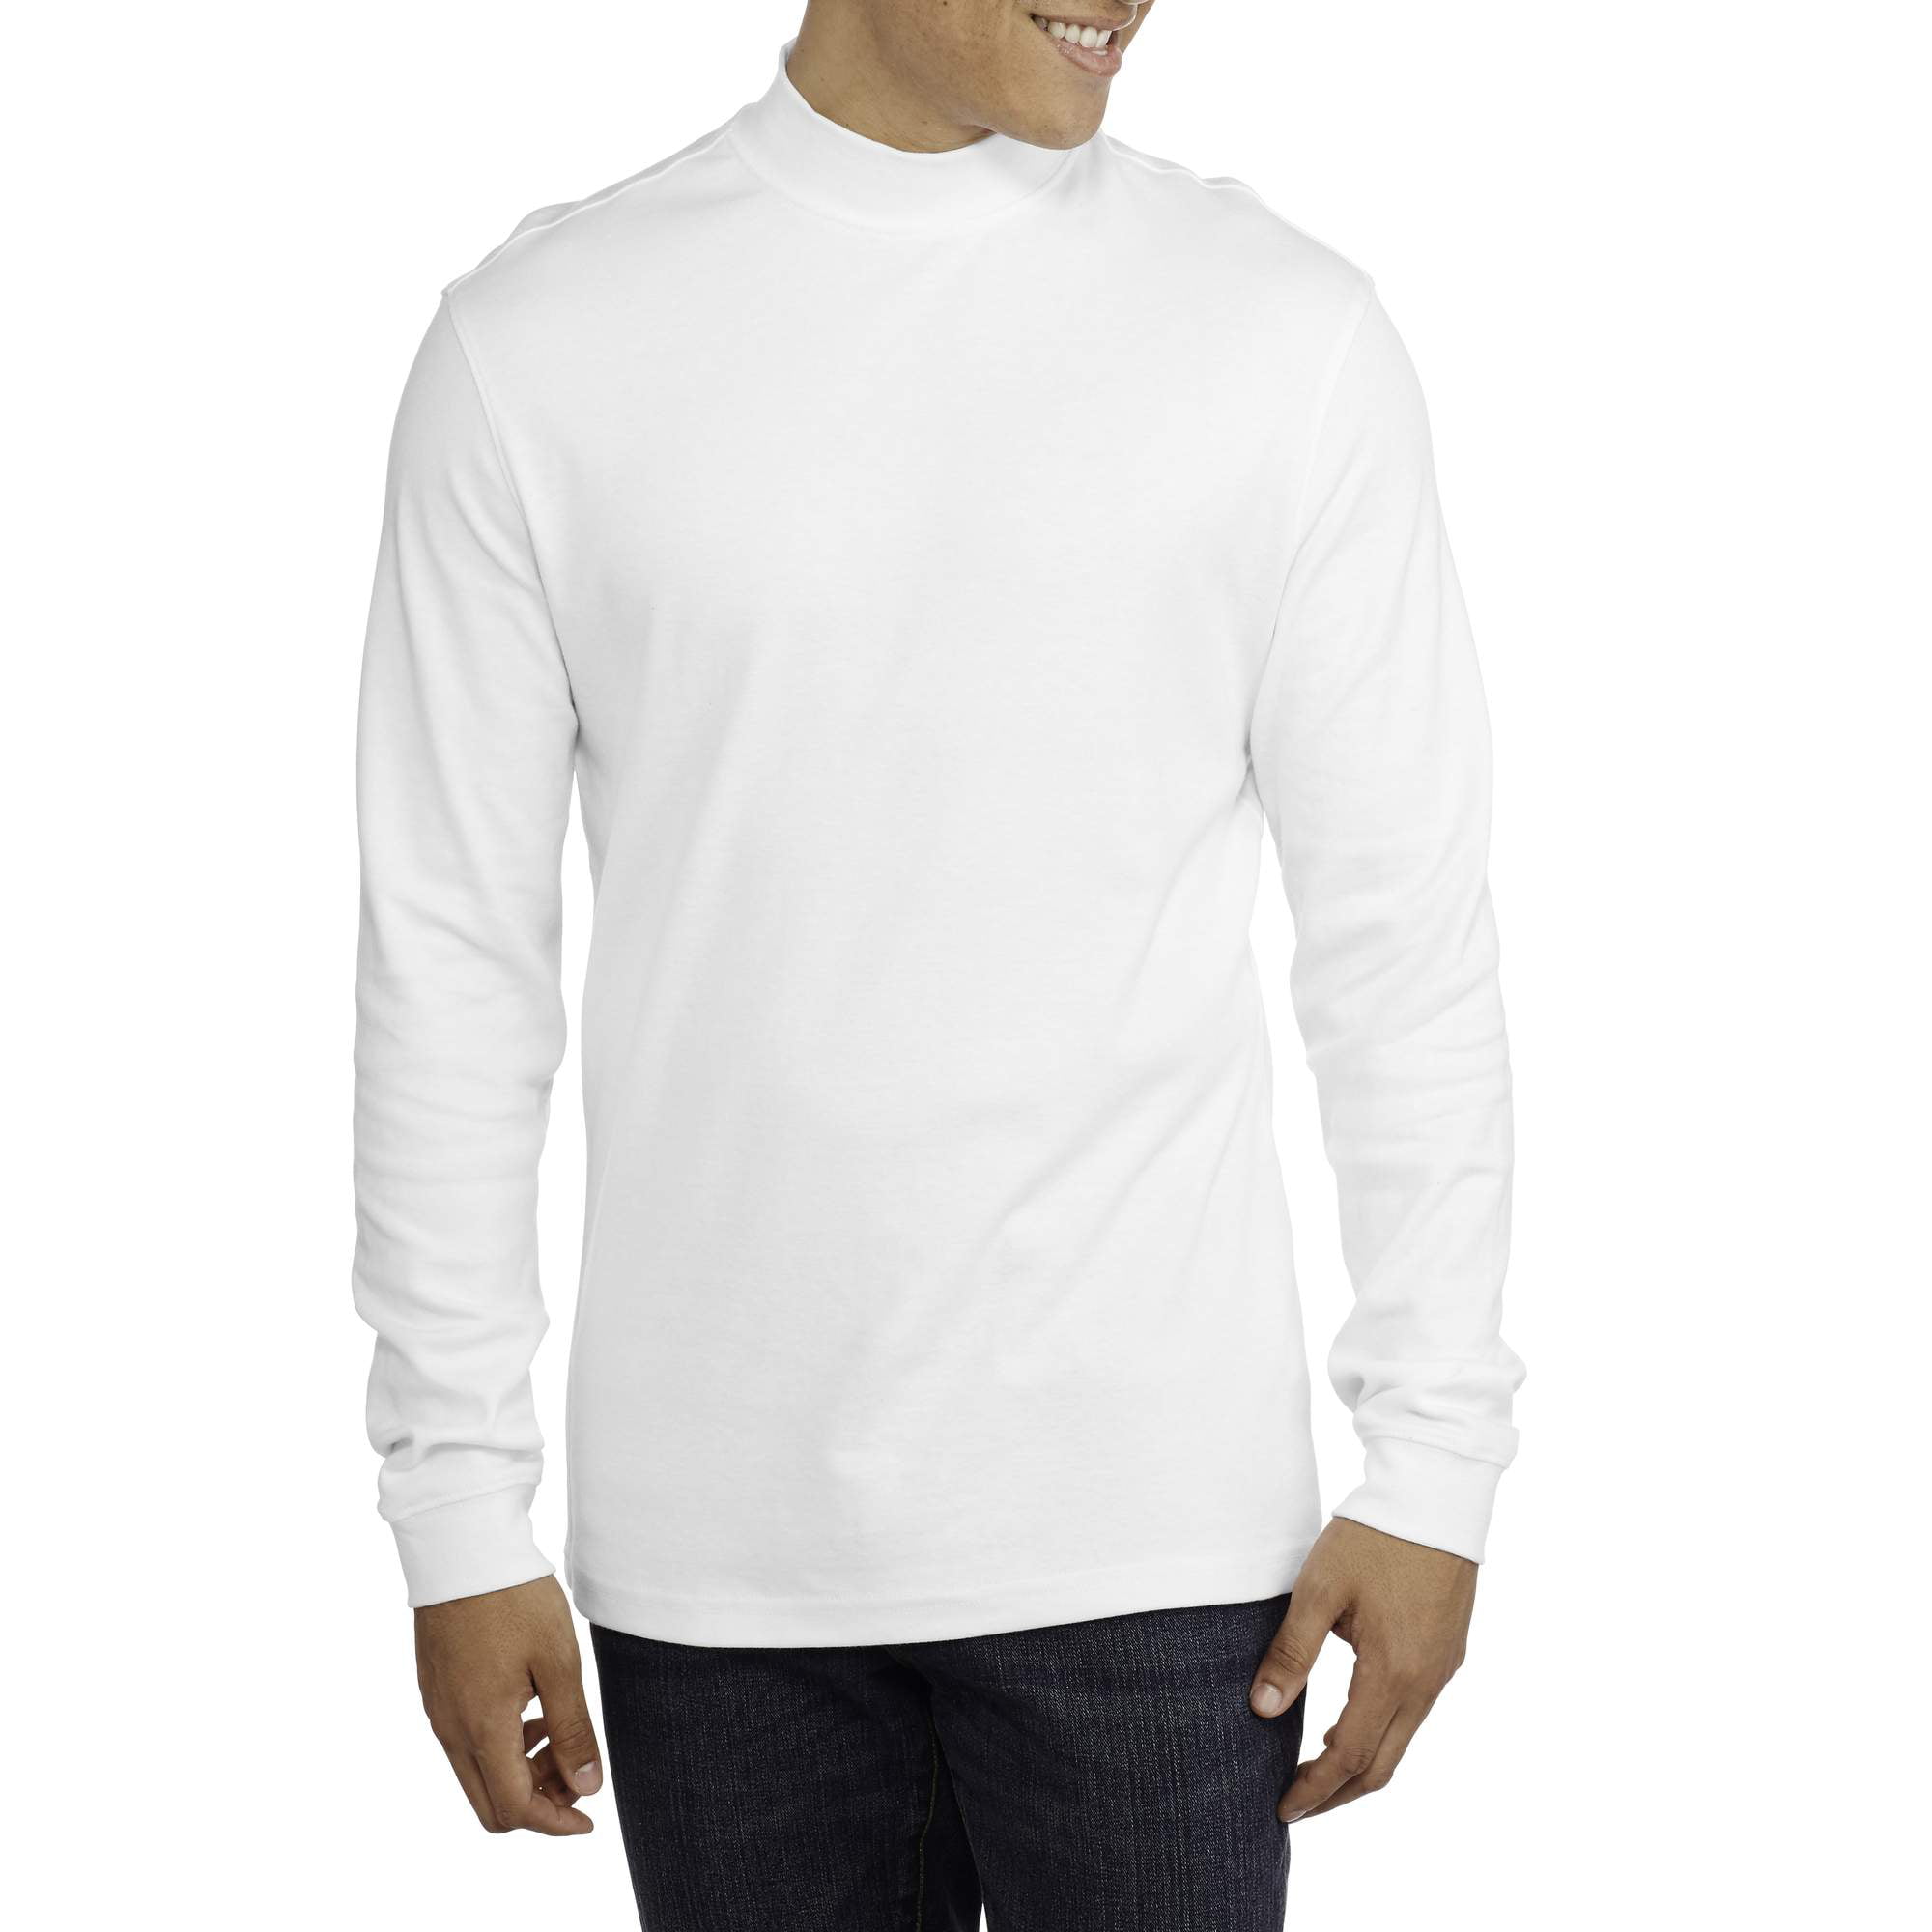 Men's Mock Neck Shirt - Walmart.com